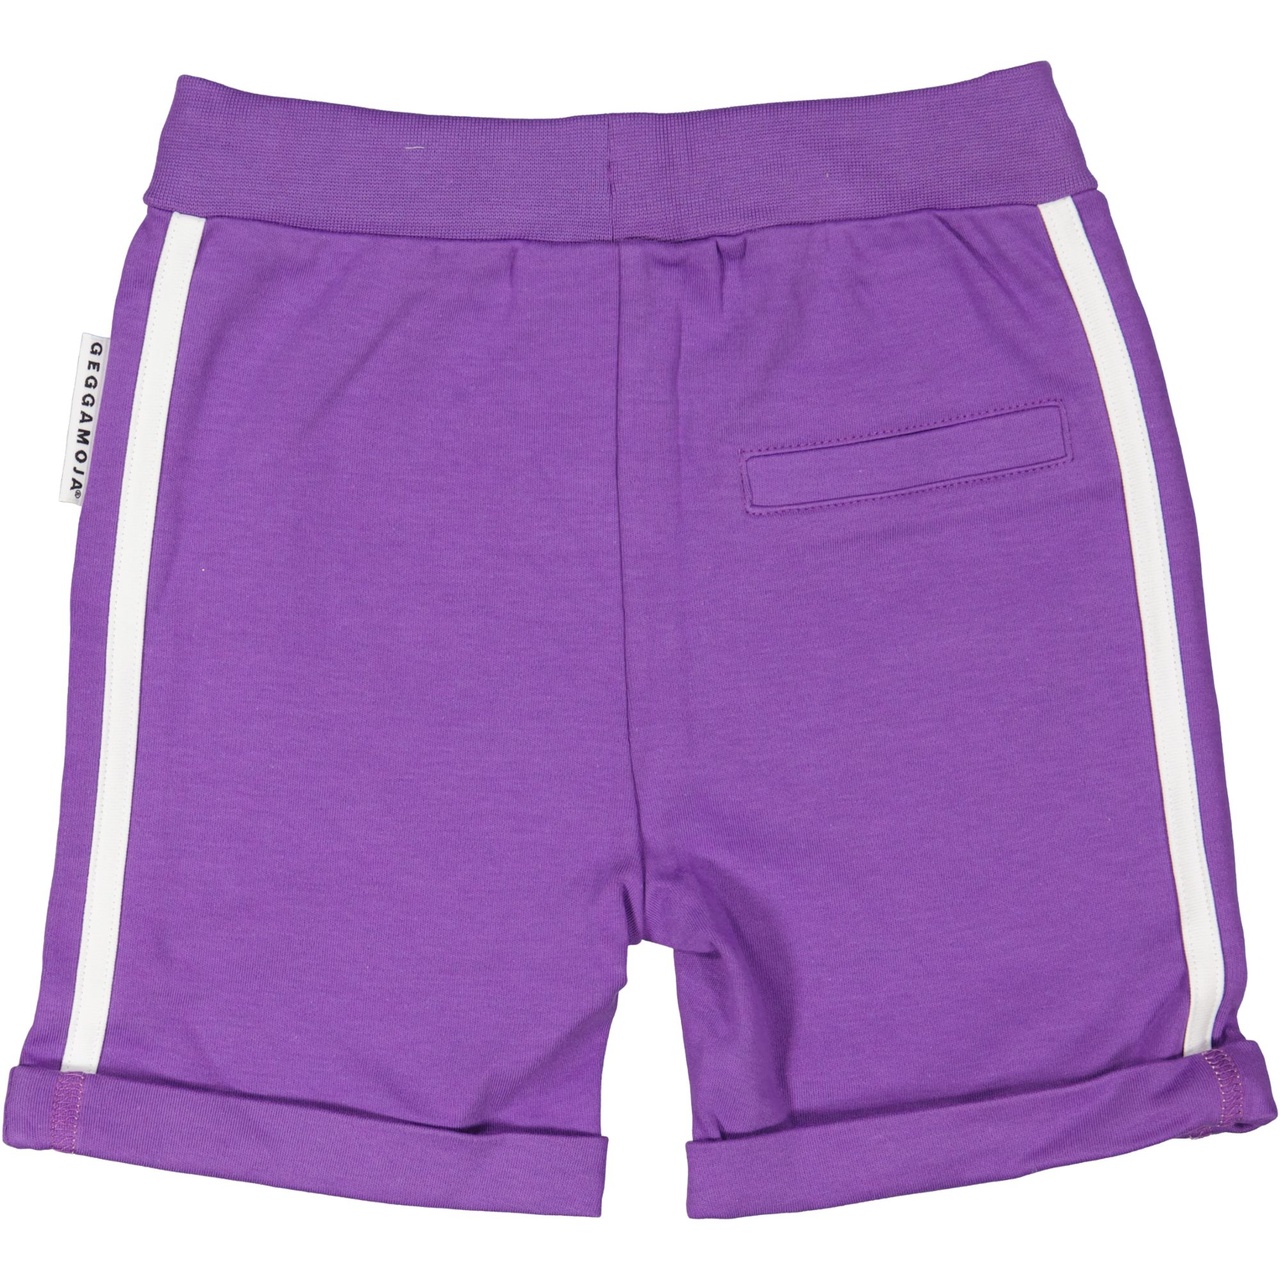 Sweat shorts Purple 05 98/104